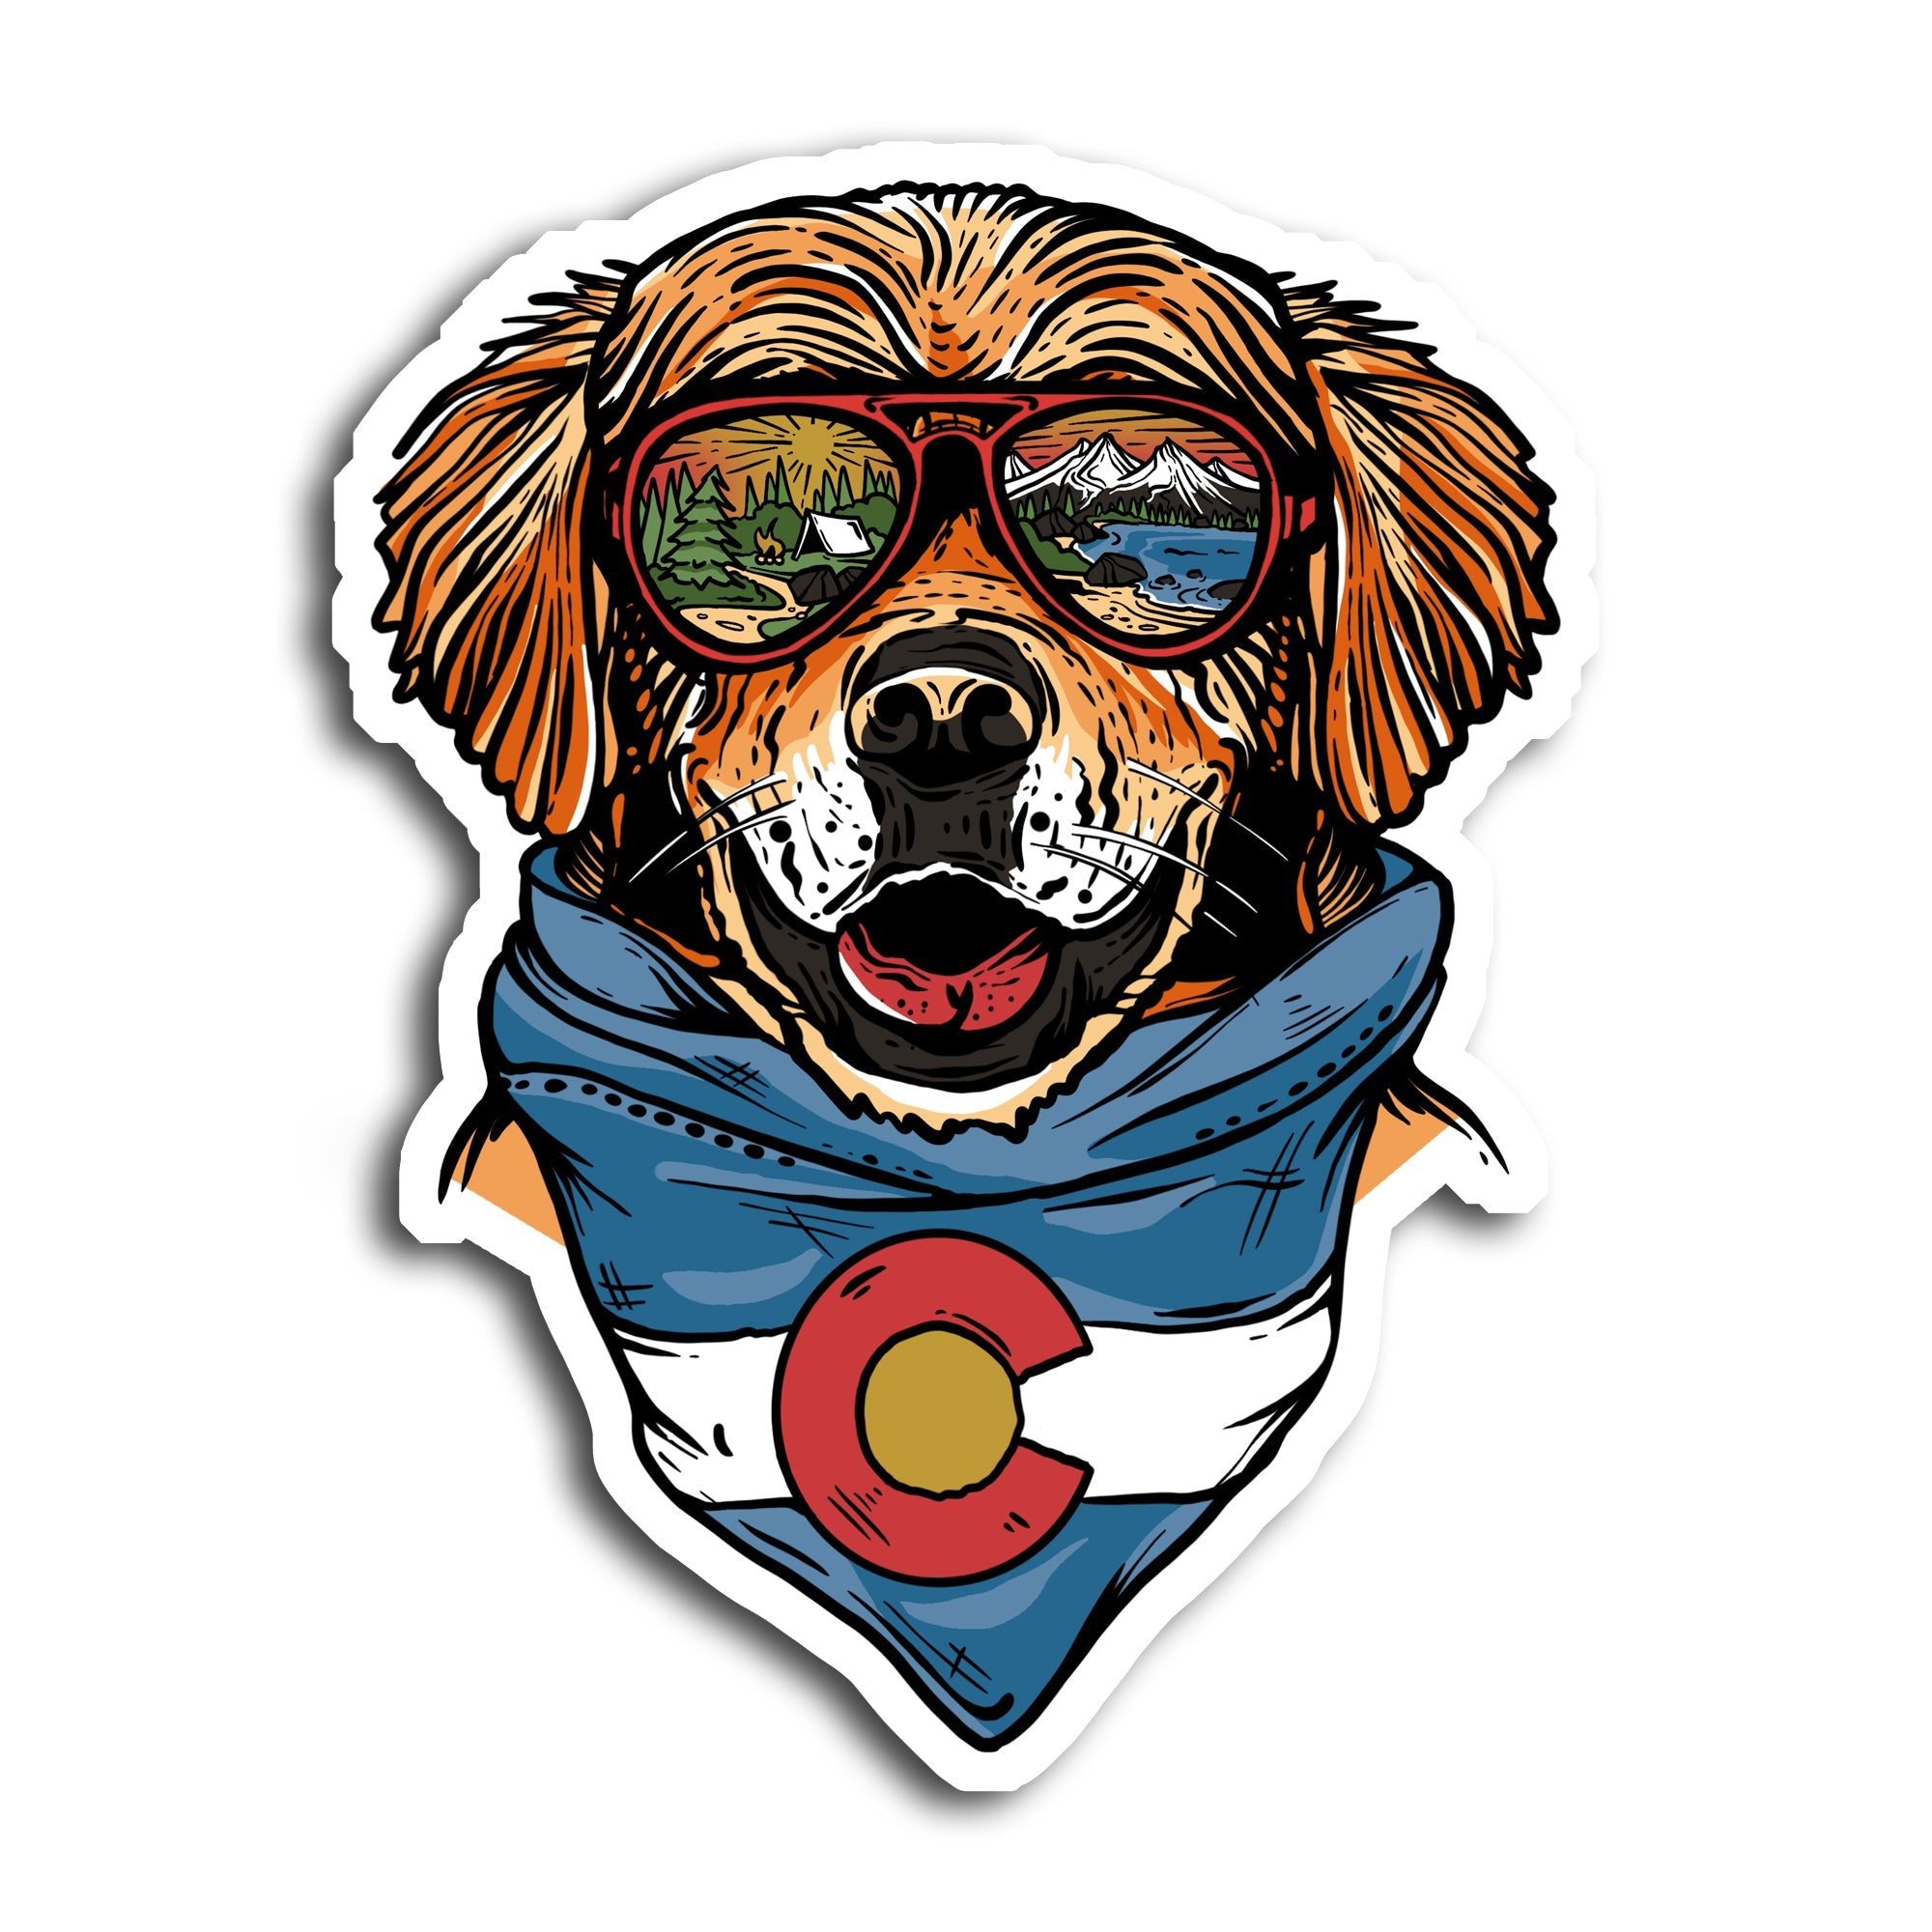 Maximus the Colorado Mountain Dog Sticker